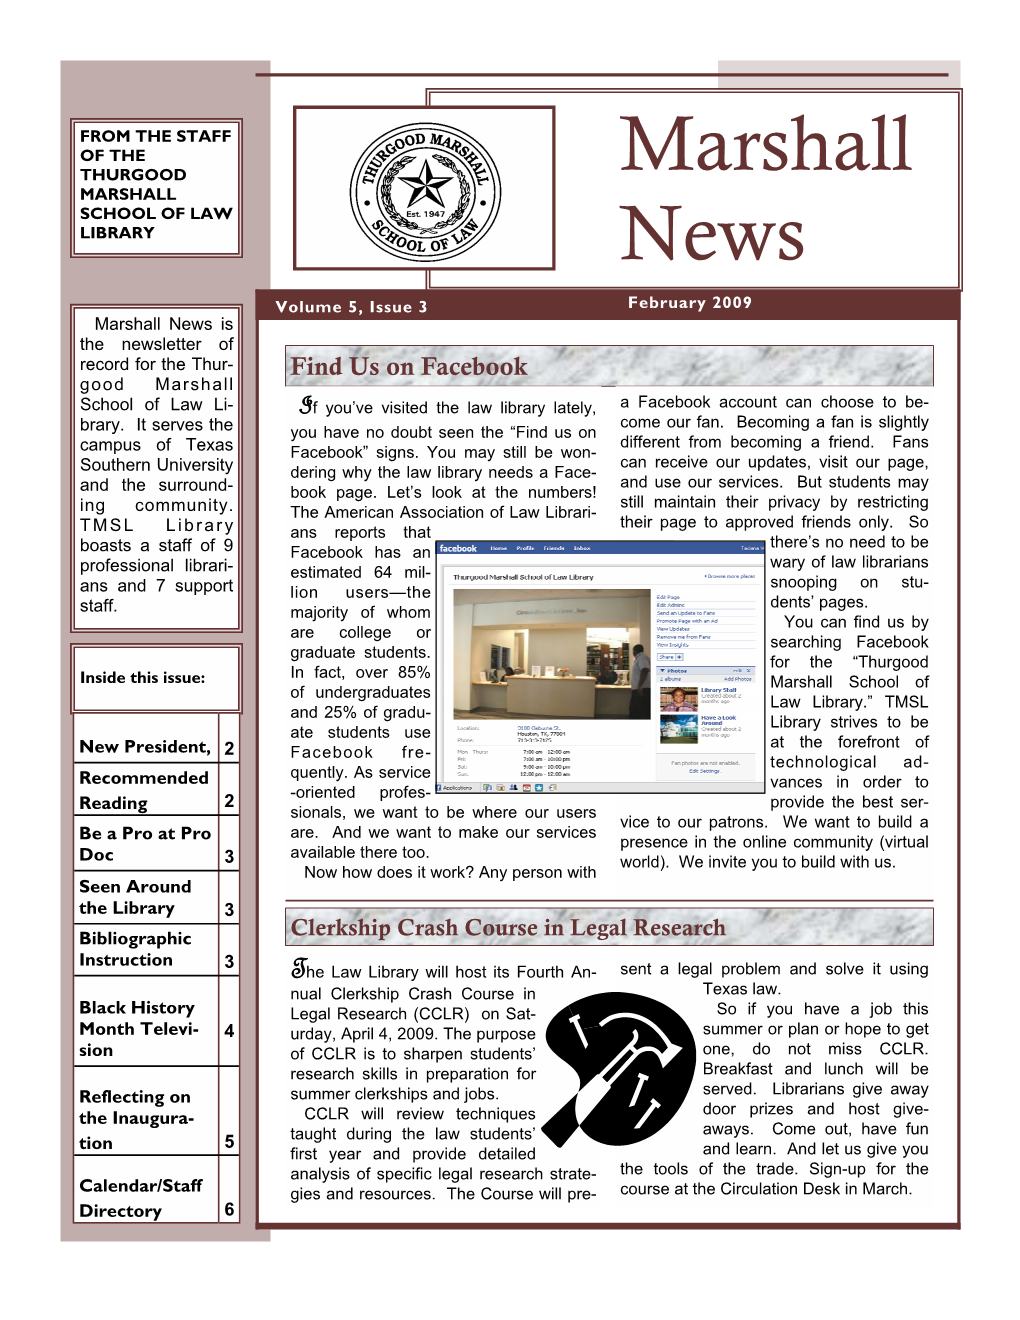 Marshall News Vol 5 Issue 3 Feb2009